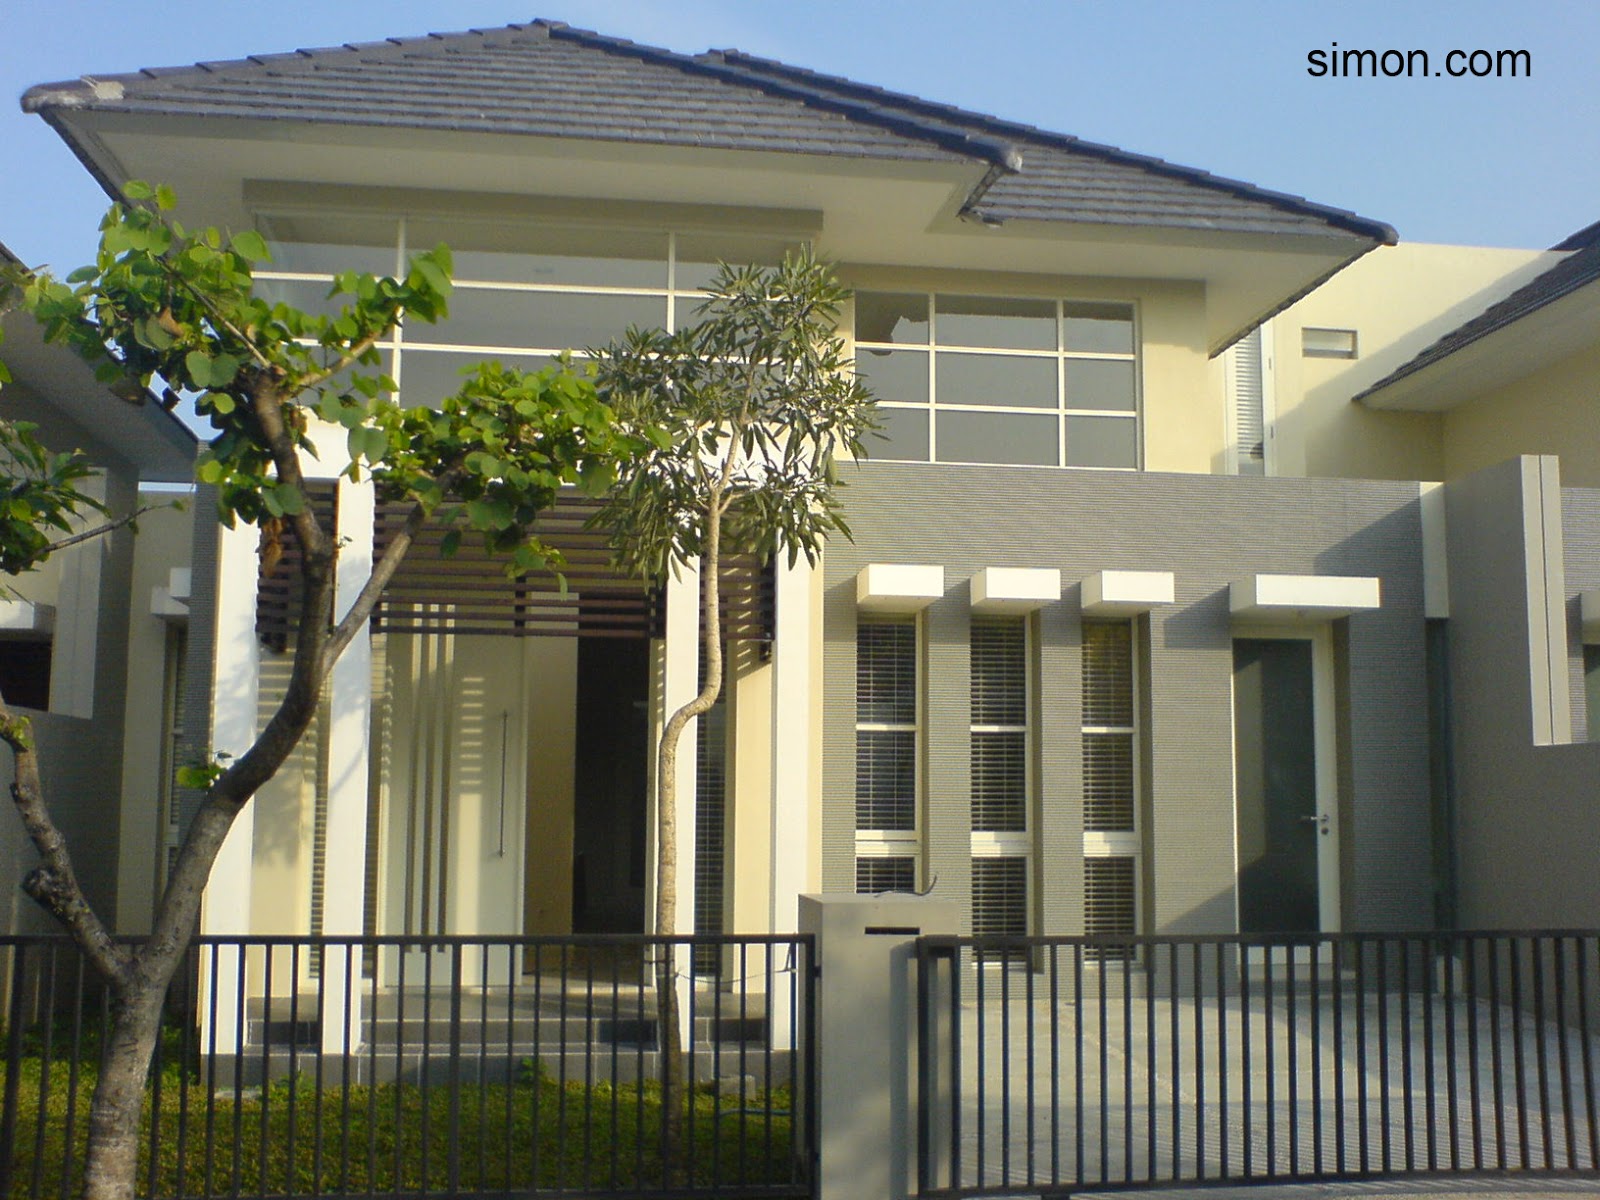 Dijual/dikontrakkan rumah baru, daerah elit RIVERSIDE Malang - Jual